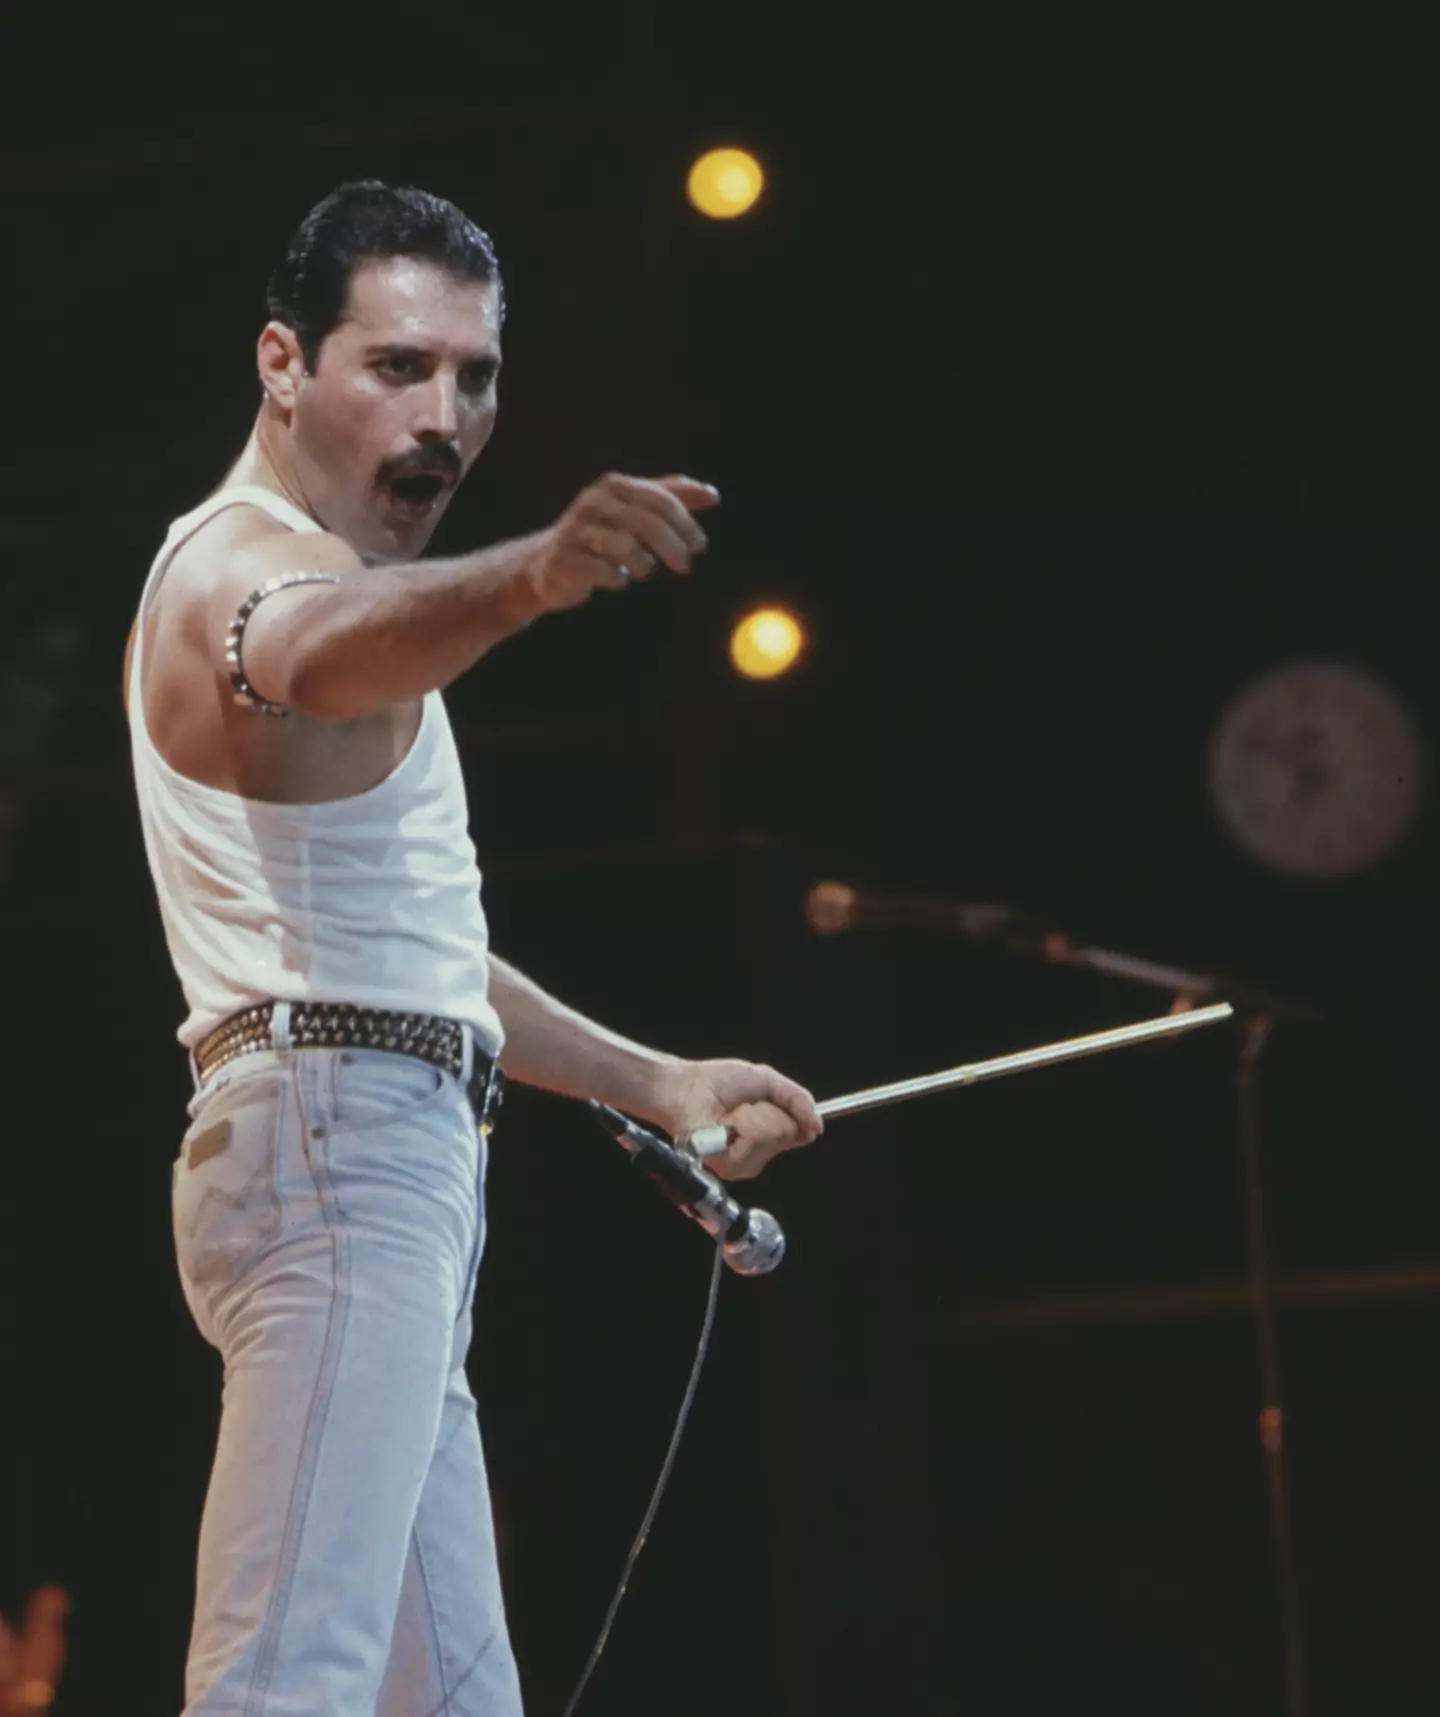 Freddie Mercury performing at Live Aid in 1985.